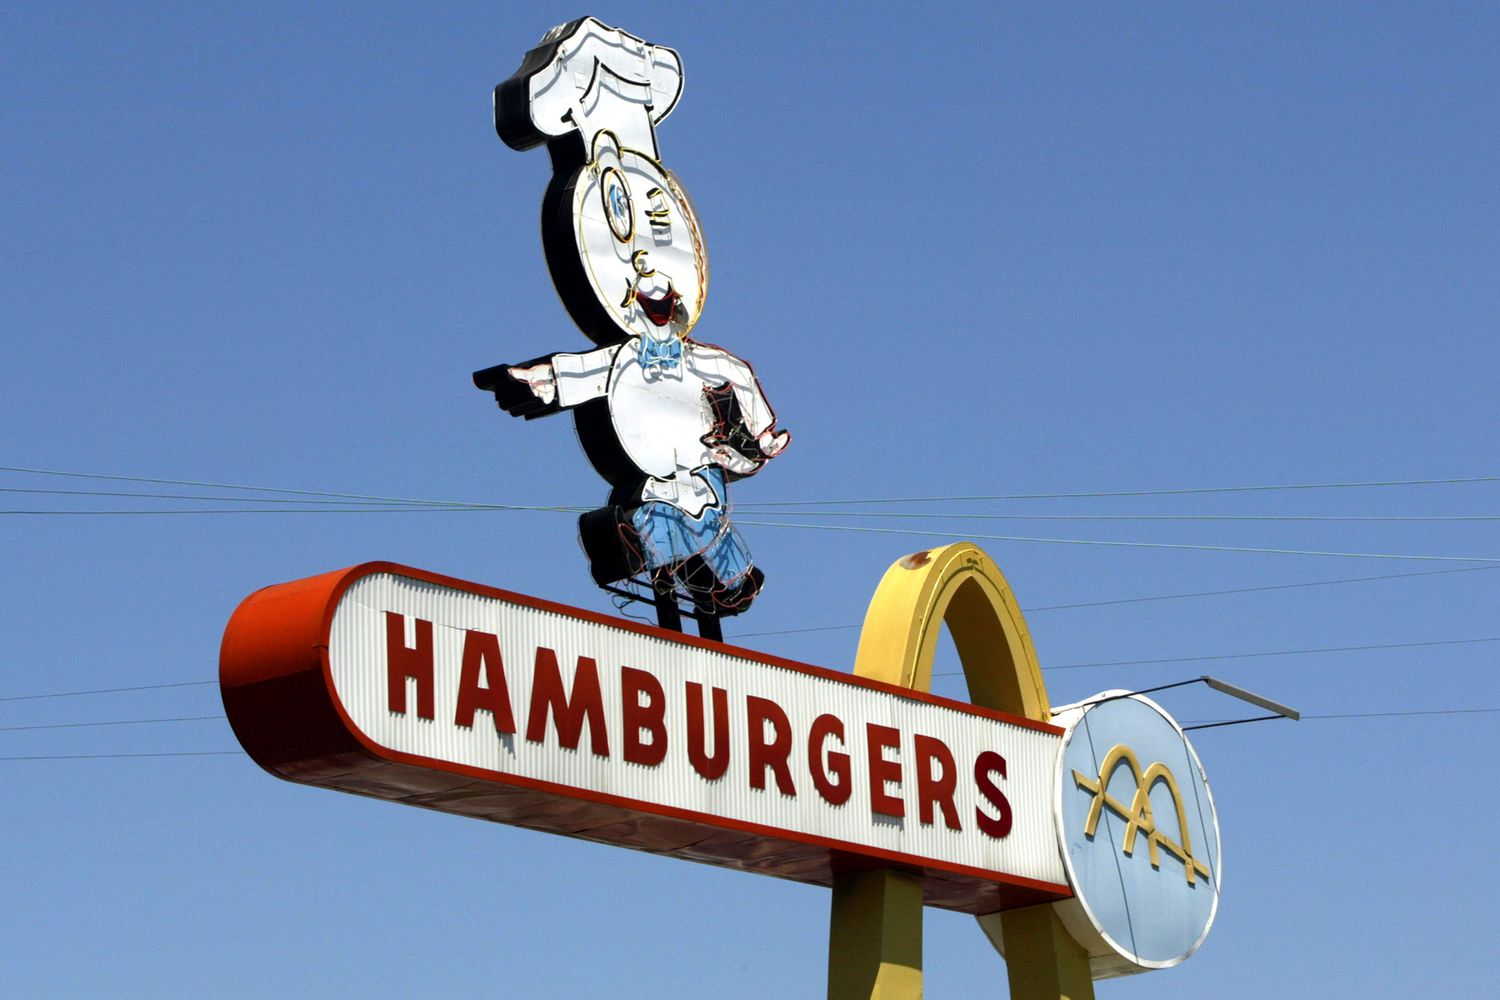 Le restaurant de restauration rapide McDonald's le plus ancien au monde à l'occasion de son 50e anniversaire le 18 août 2003 à Downey, en Californie.